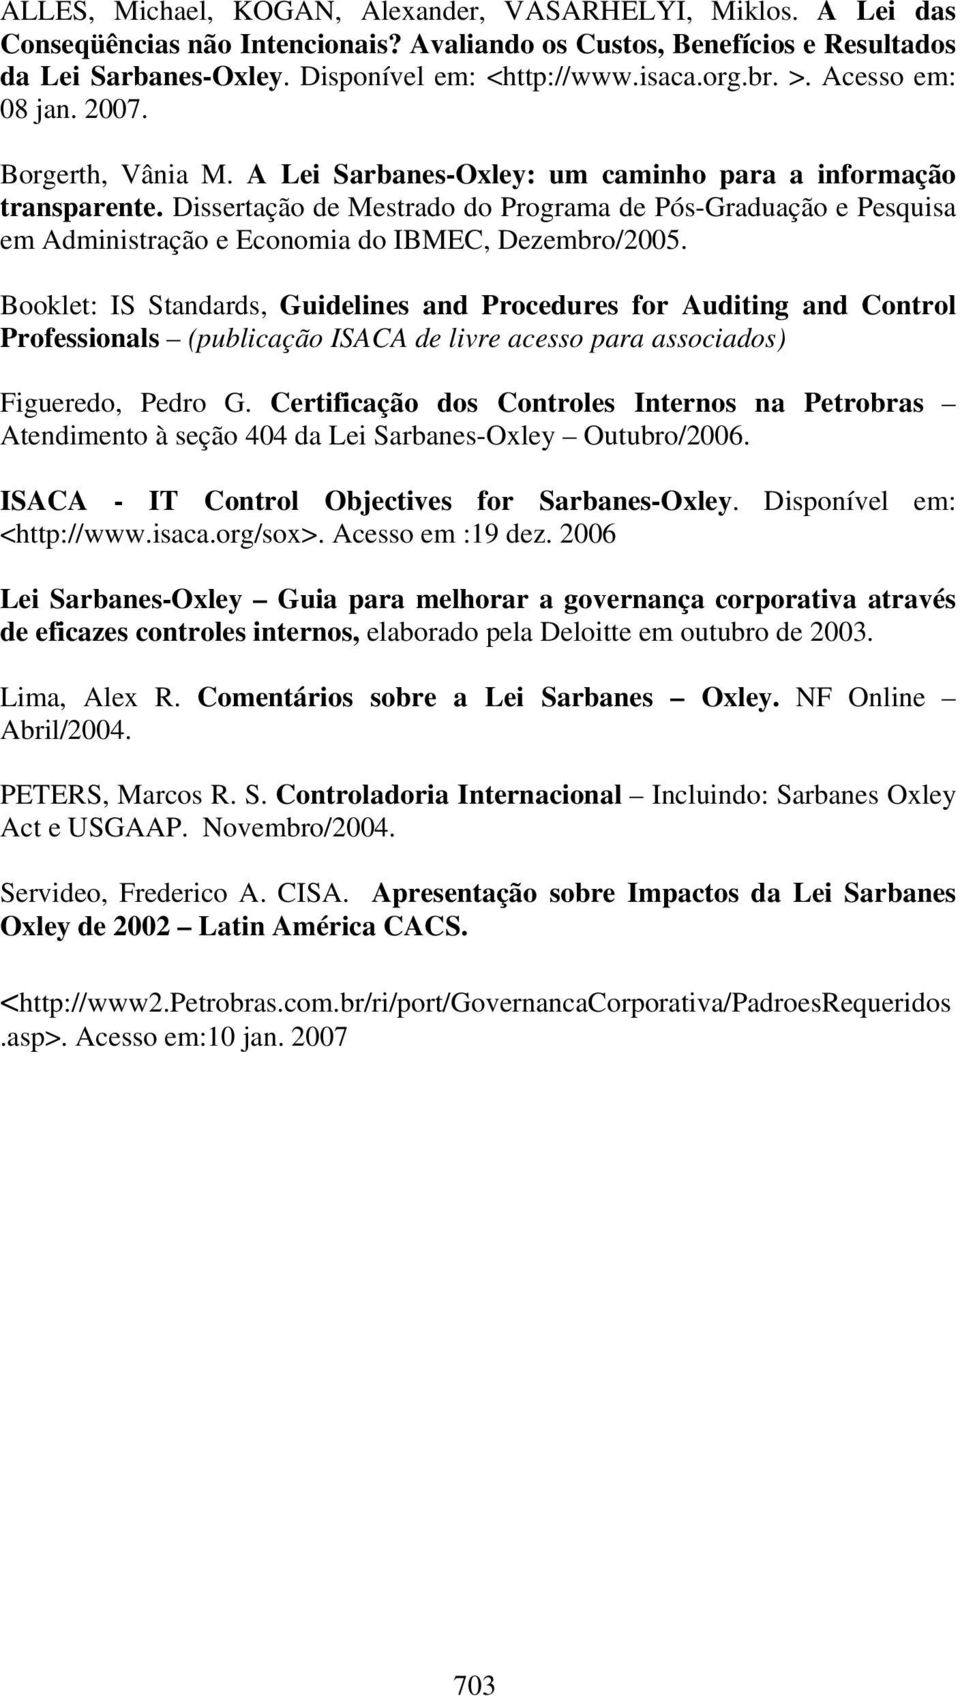 Dissertação de Mestrado do Programa de Pós-Graduação e Pesquisa em Administração e Economia do IBMEC, Dezembro/2005.